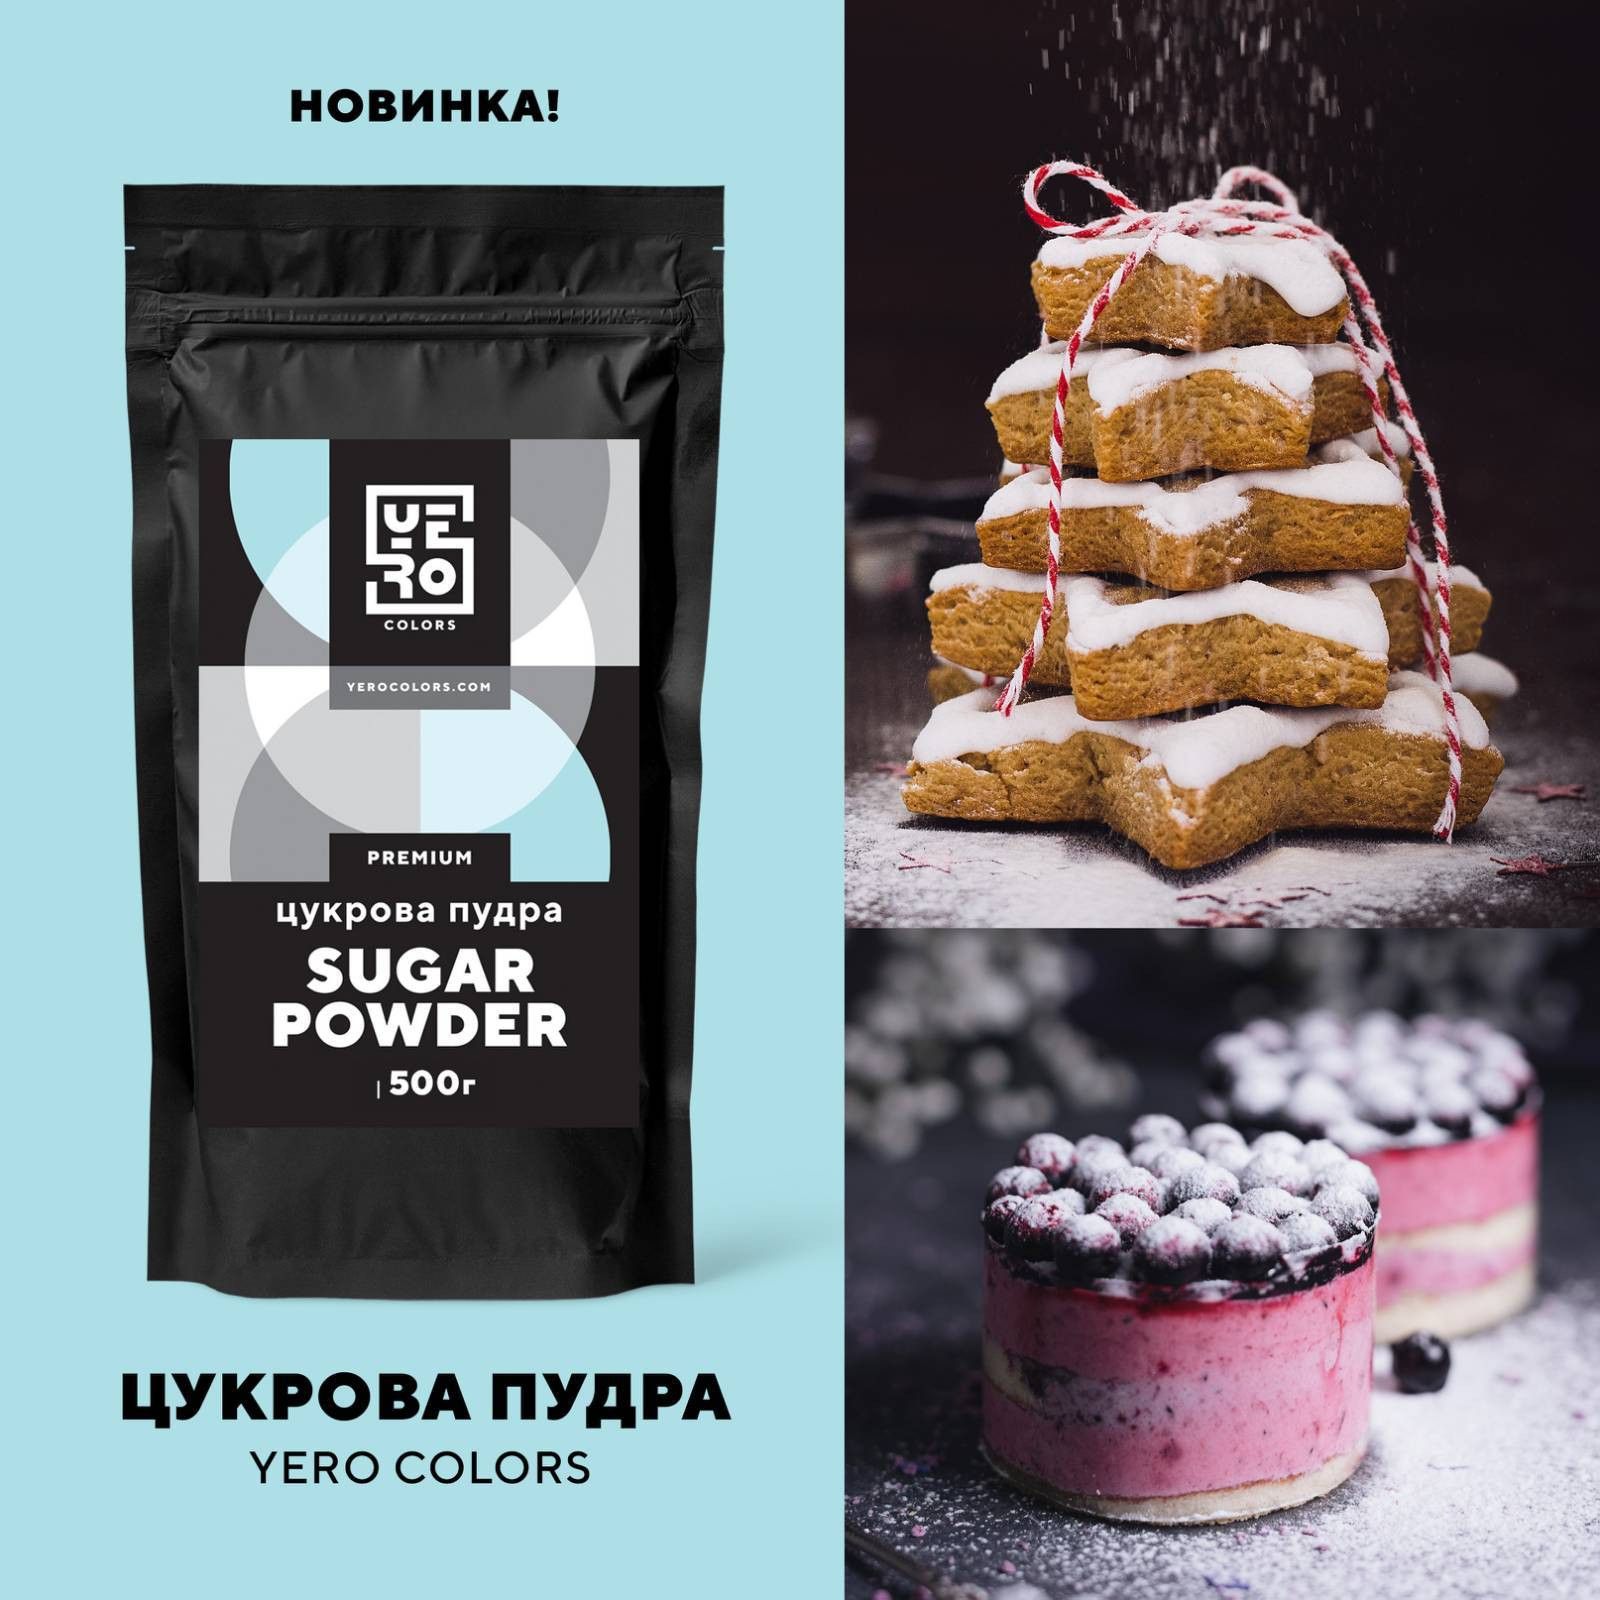 ⋗ Сахарная пудра YERO COLORS, 500г купить в Украине ➛ CakeShop.com.ua, фото